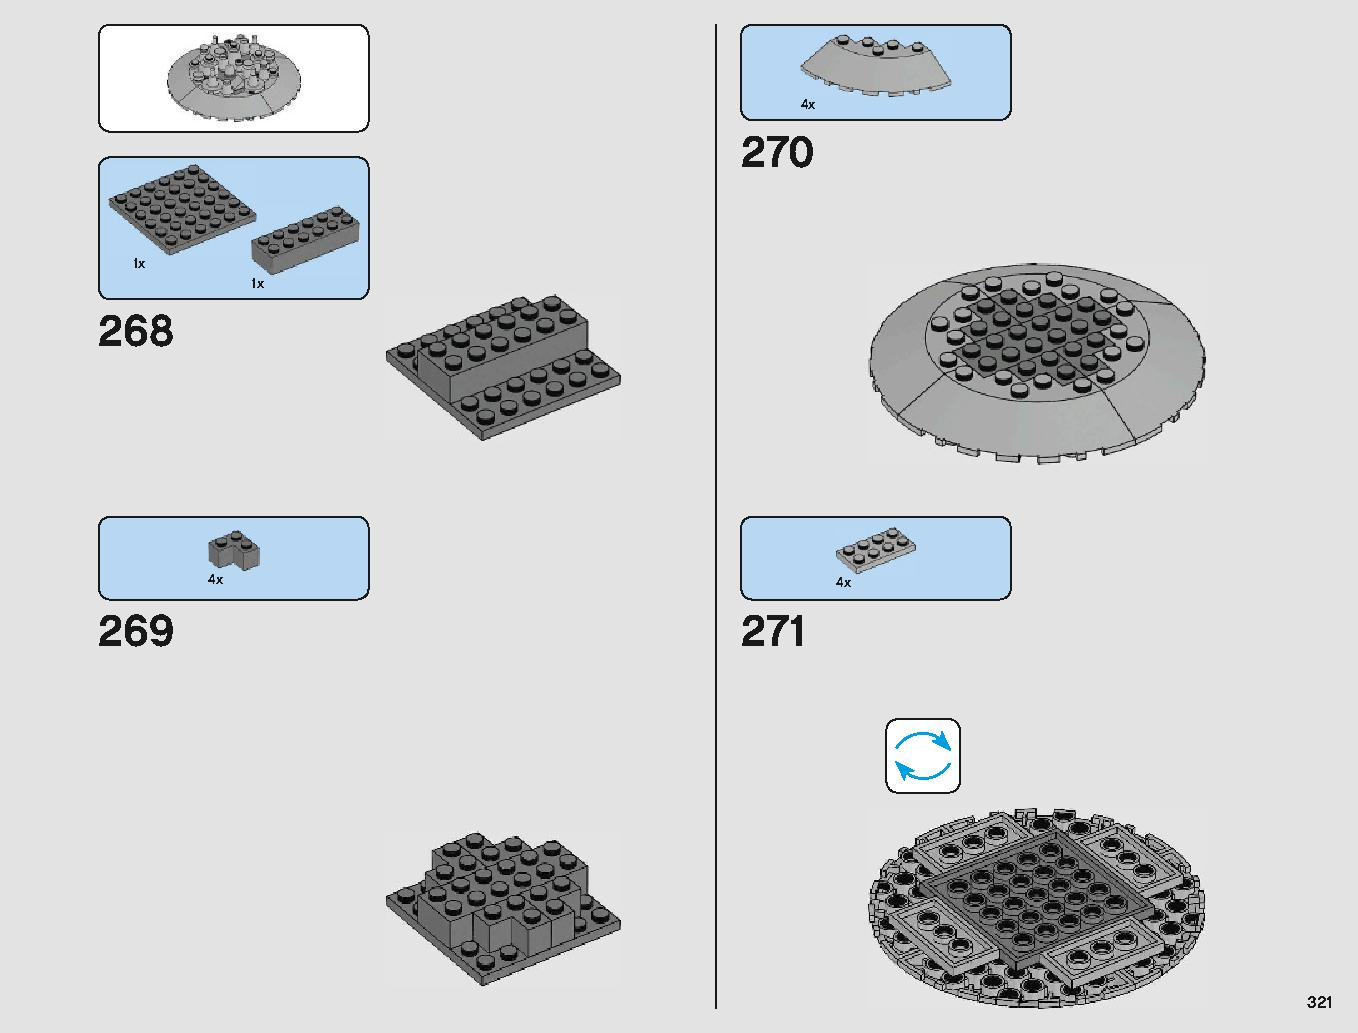 クラウド・シティ 75222 レゴの商品情報 レゴの説明書・組立方法 321 page